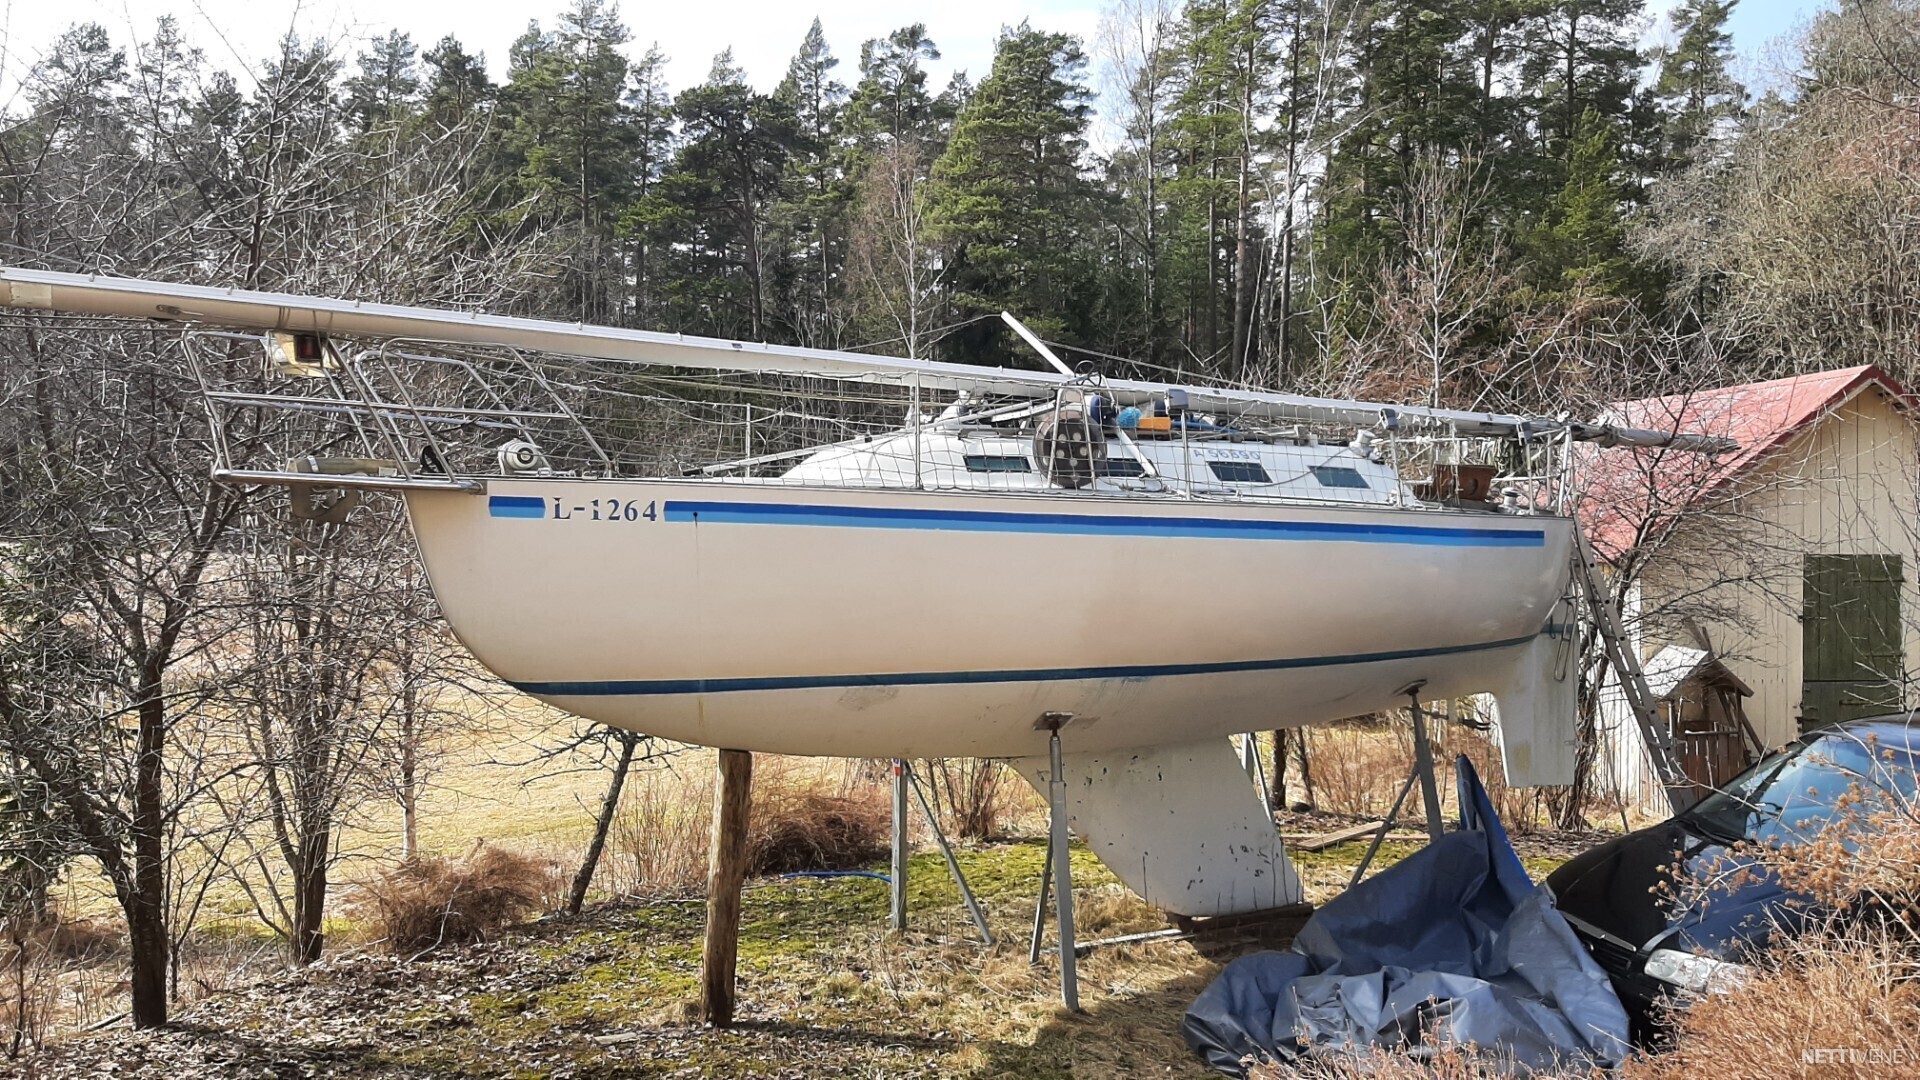 grinde 27 sailboat for sale